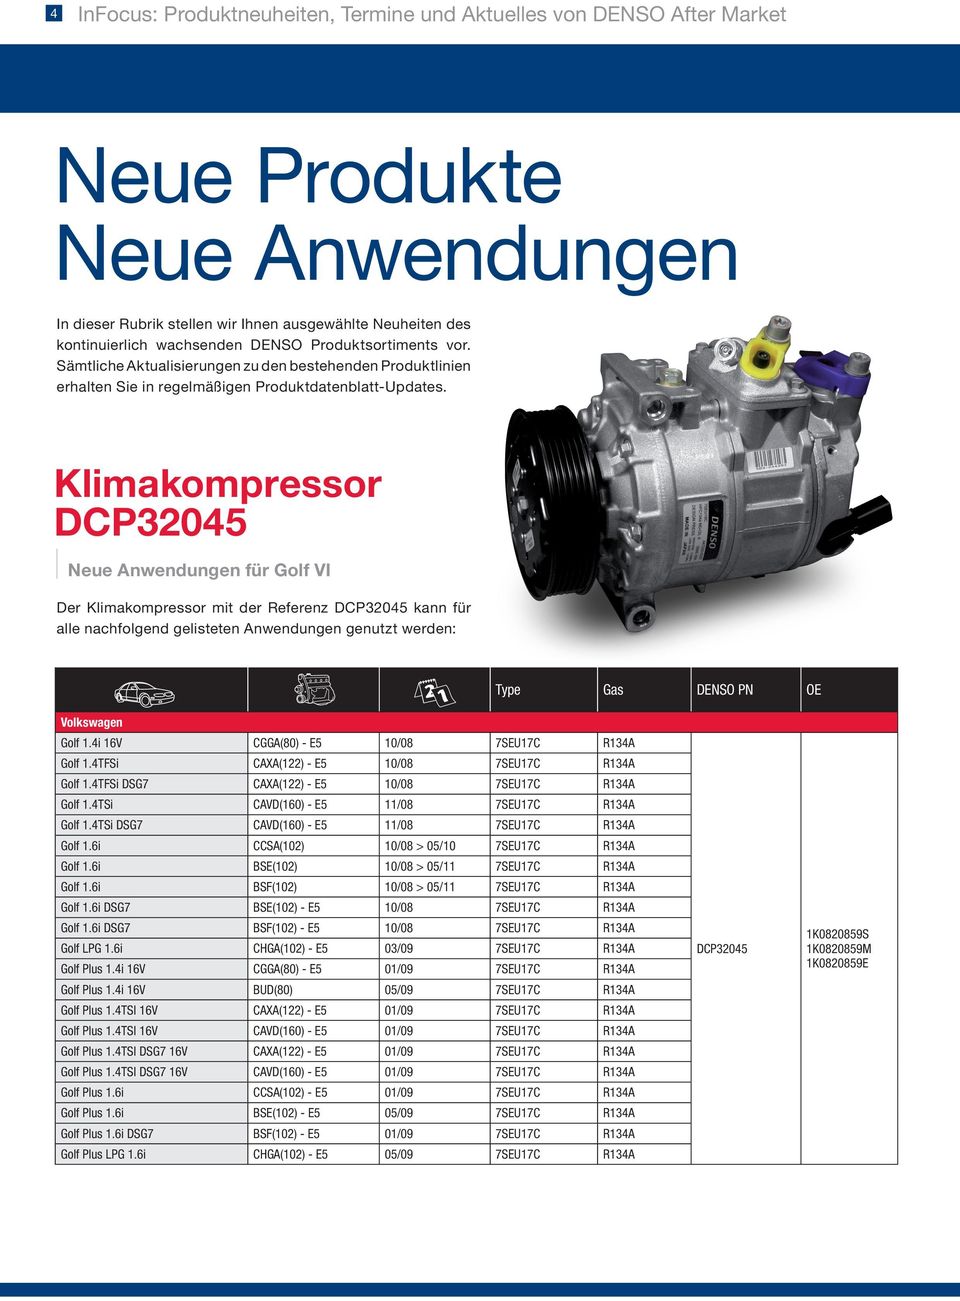 Klimakompressor DCP32045 Neue Anwendungen für Golf VI Der Klimakompressor mit der Referenz DCP32045 kann für alle nachfolgend gelisteten Anwendungen genutzt werden: Type Gas DENSO PN OE Volkswagen